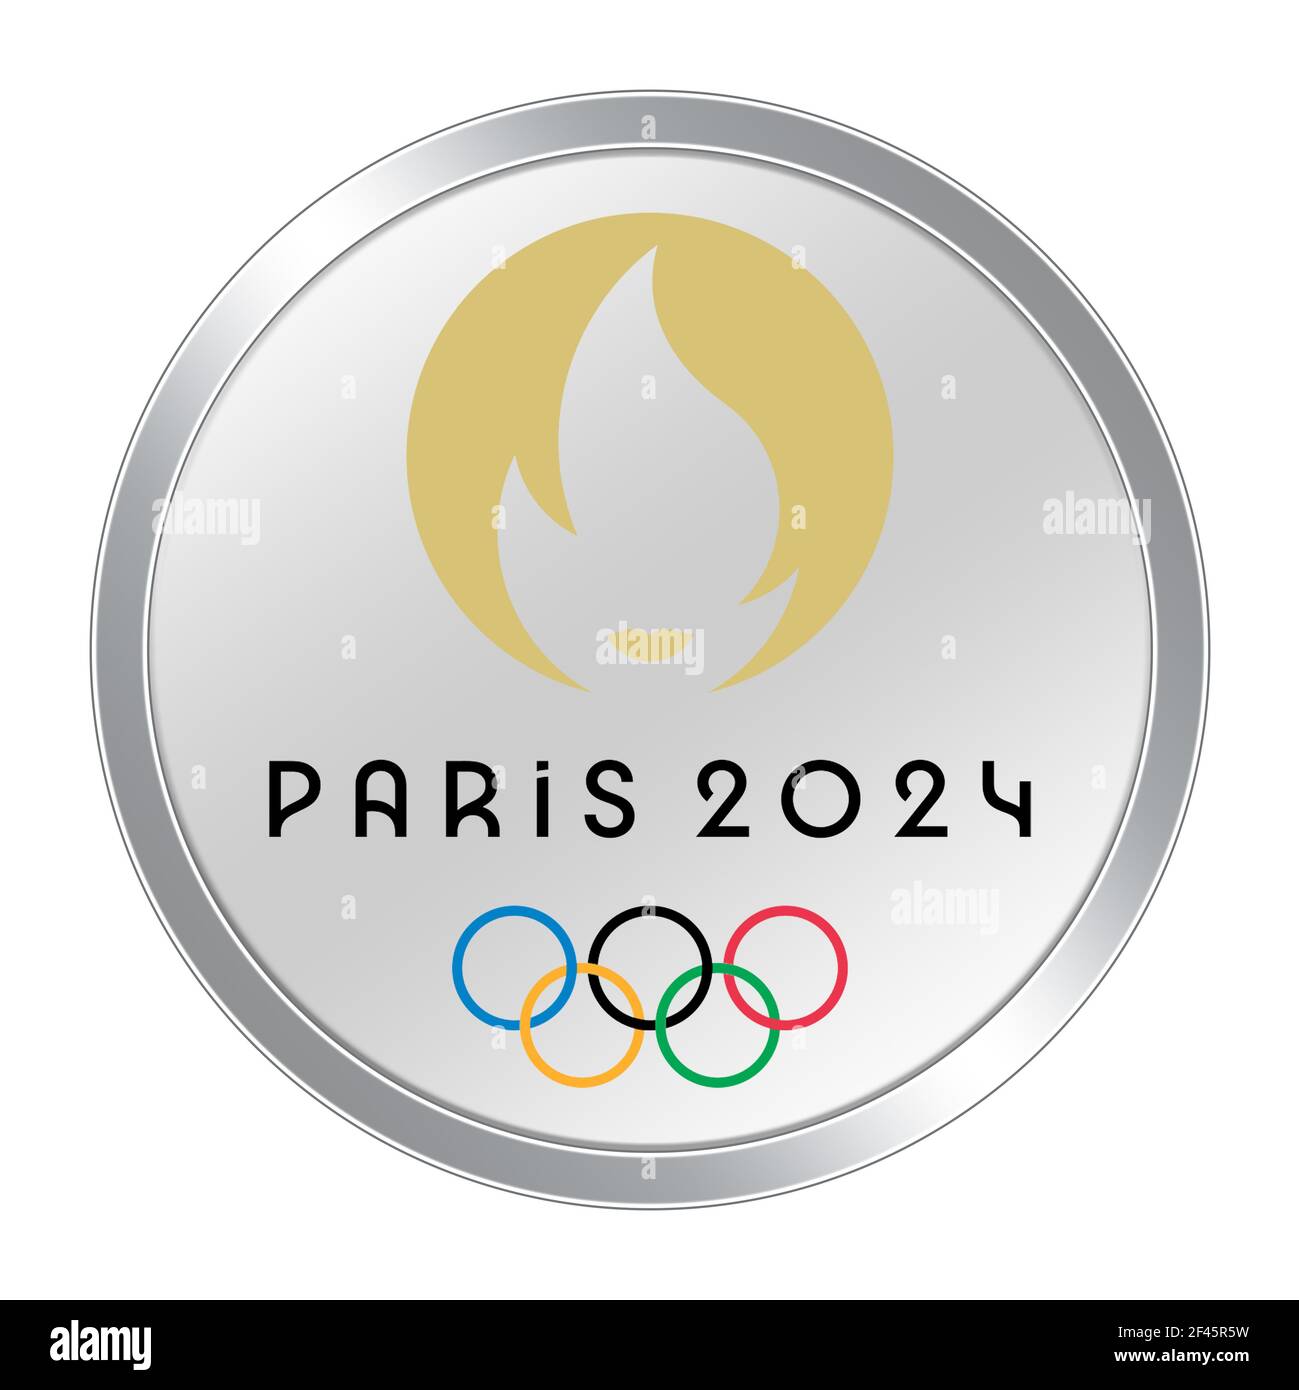 Где будет проходить олимпийские игры в 2024. Paris 2024 Olympics. Эмблема олимпиады 2024. Медали олимпиады 2024. Медали Париж 2024.